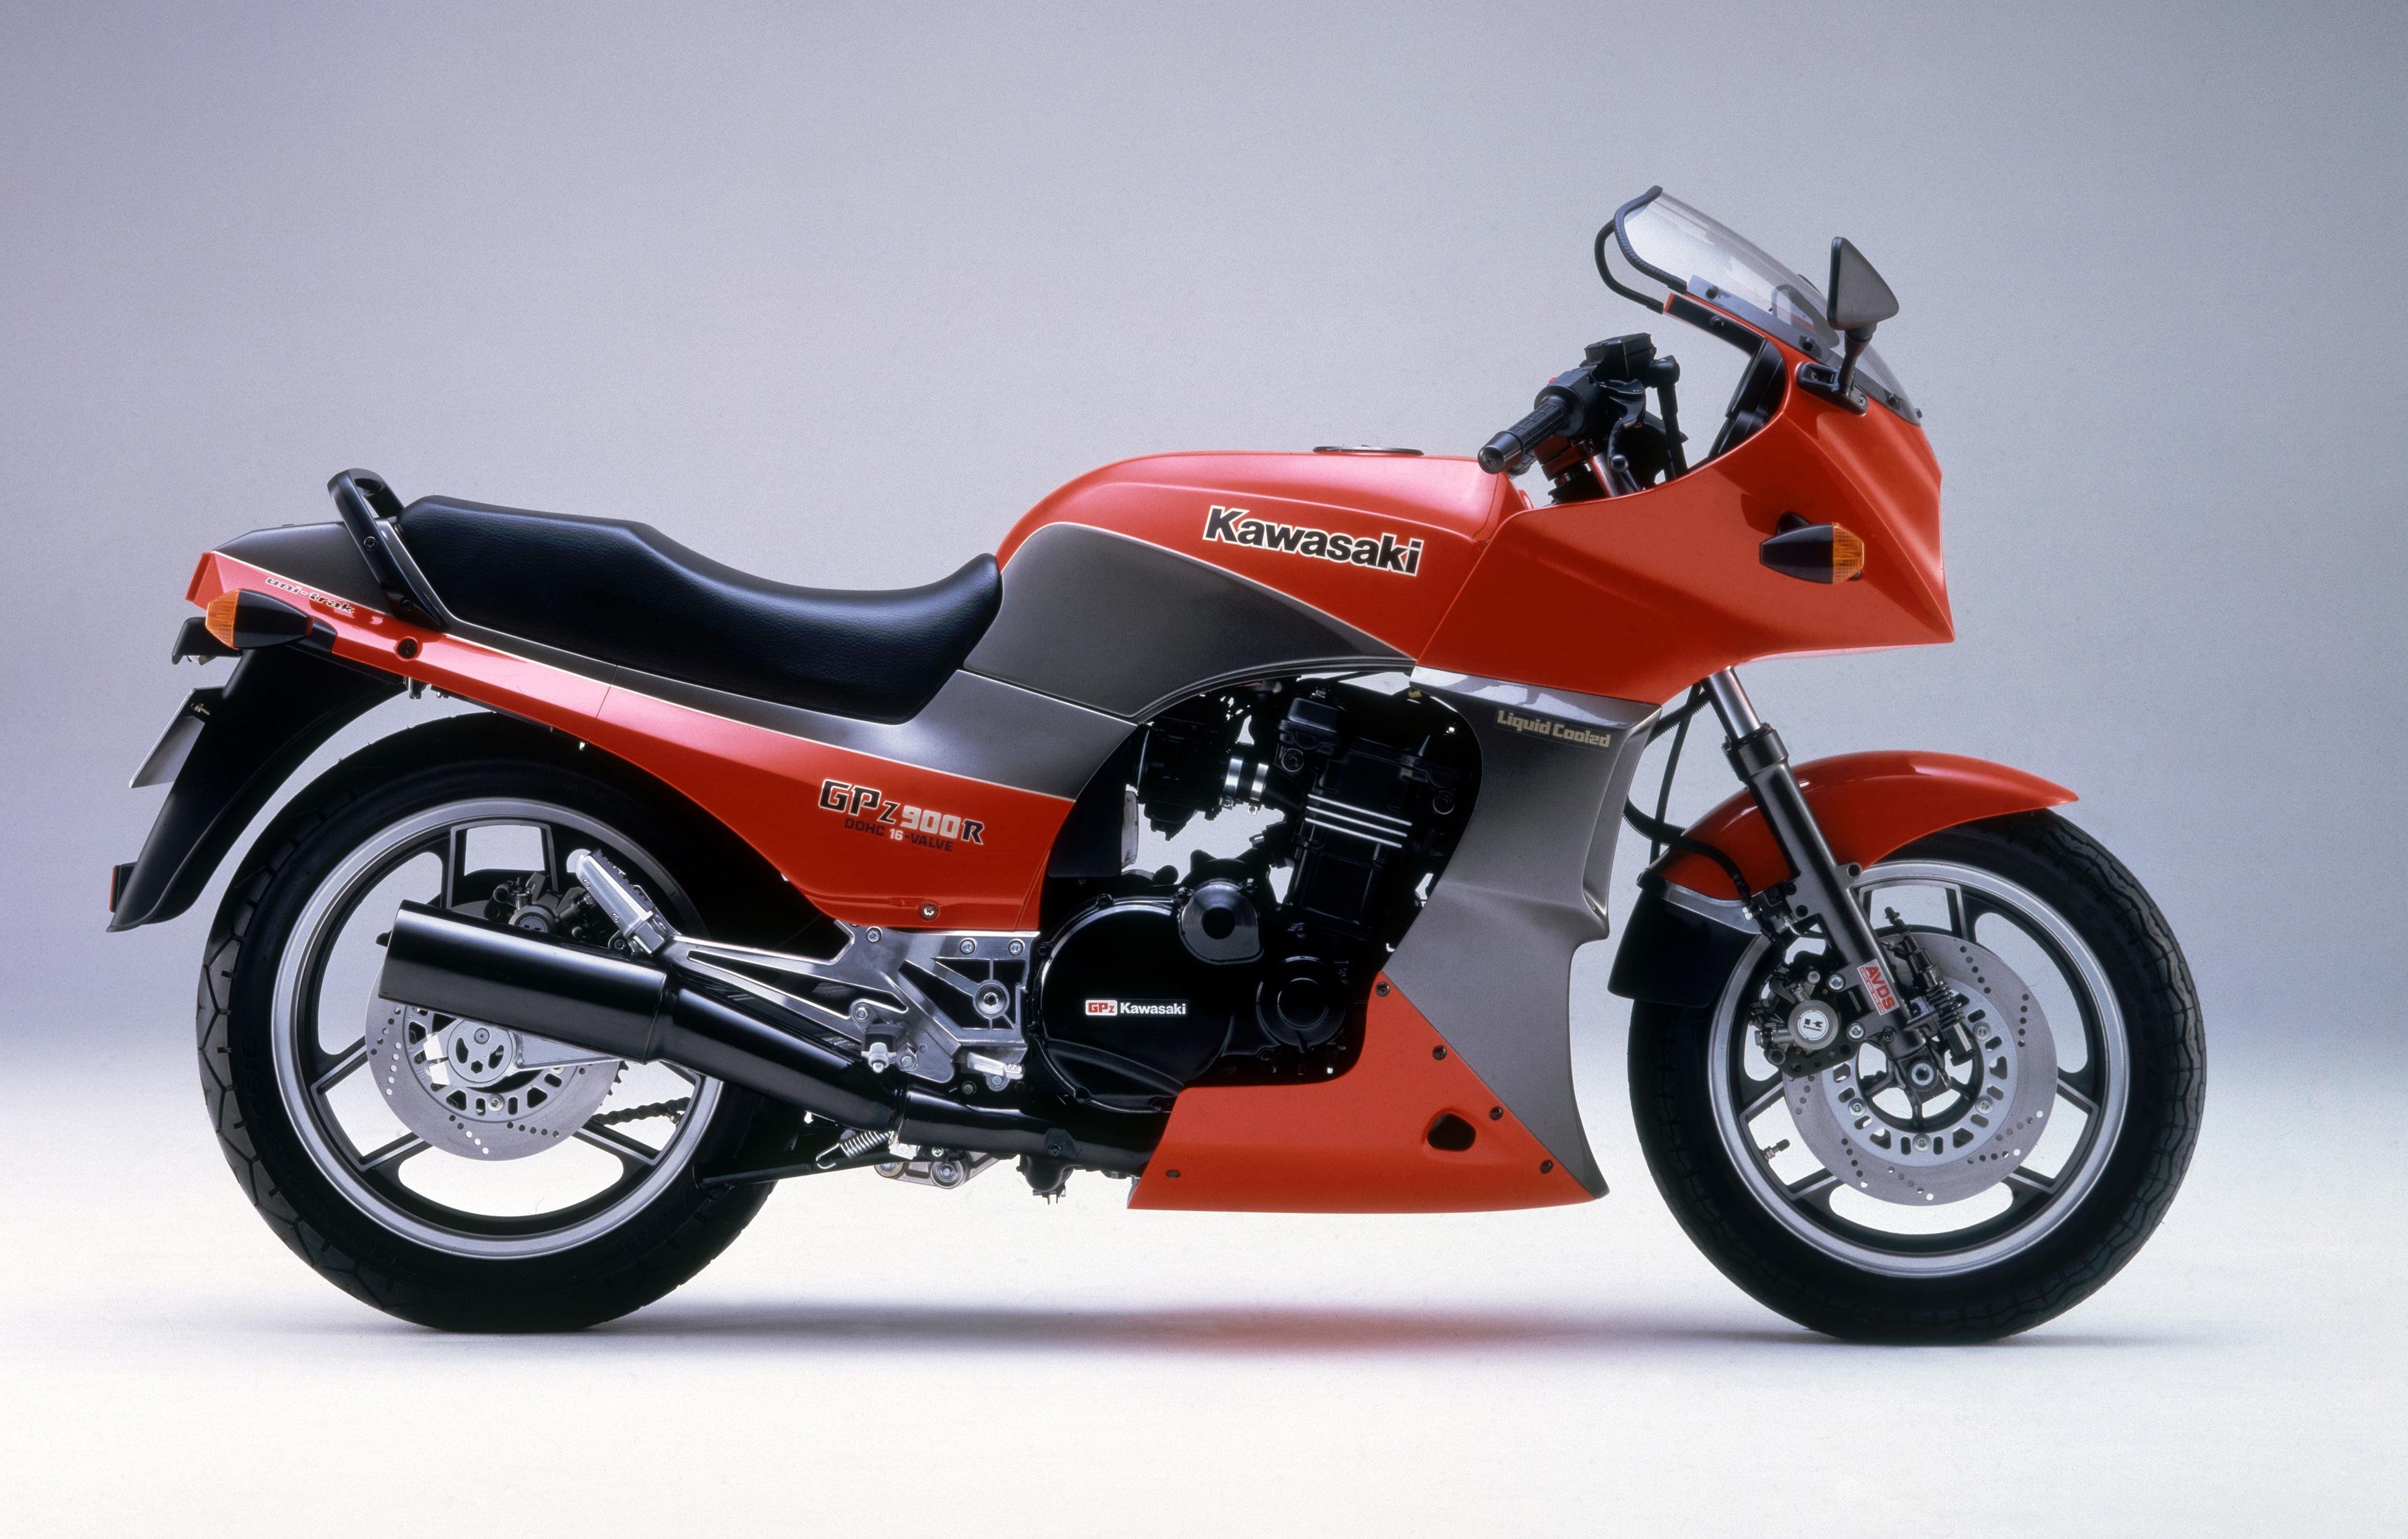  kawasaki Gpz  900r Motorcycles 1984 Wallpapers HD 